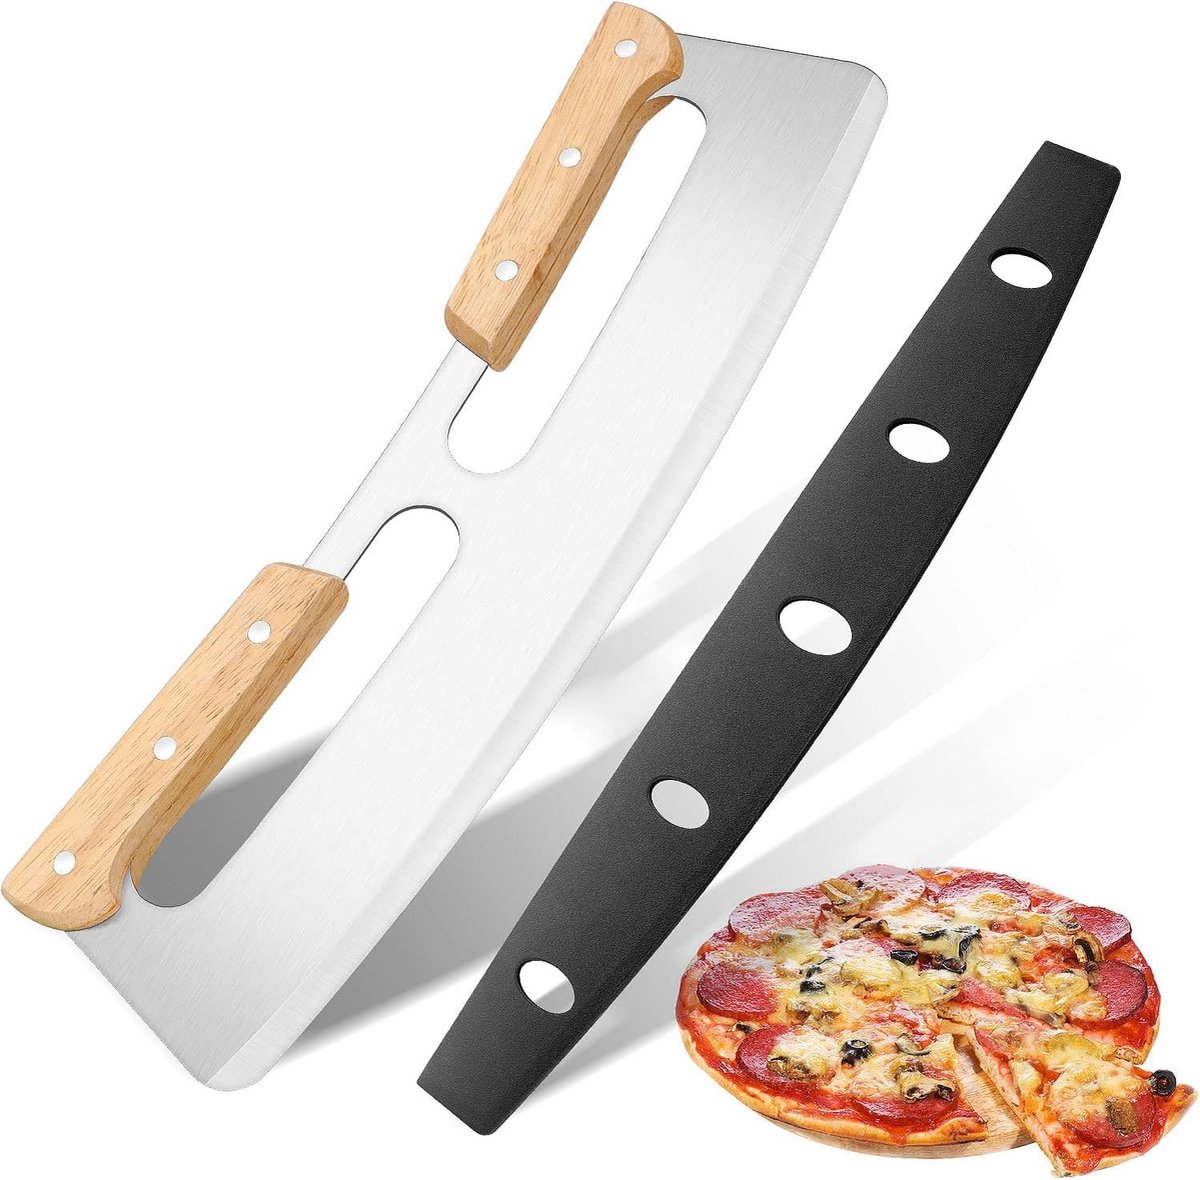 Pizza wiegmes, pizzasnijder met dubbele houten handgreep, pizzames van roestvrij staal met beschermhoes, geschikt voor het snijden van pizza, 35 cm